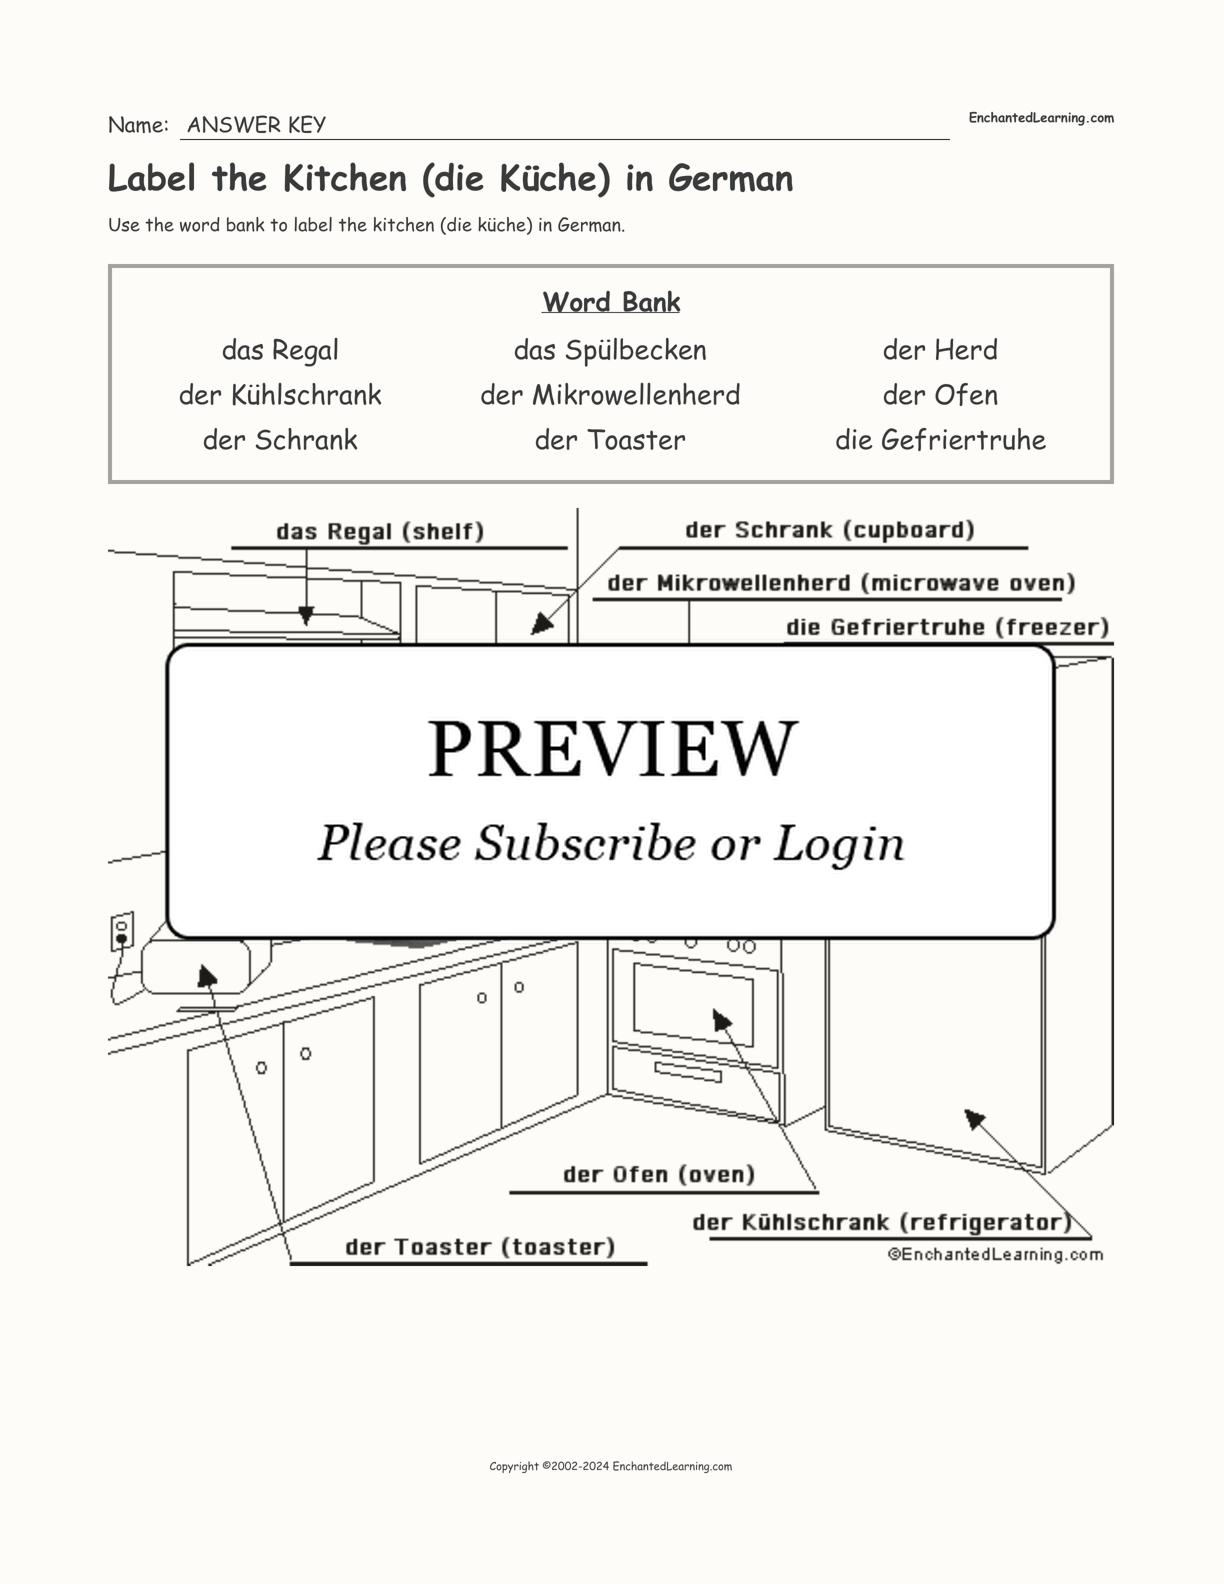 Label the Kitchen (die Küche) in German interactive worksheet page 2